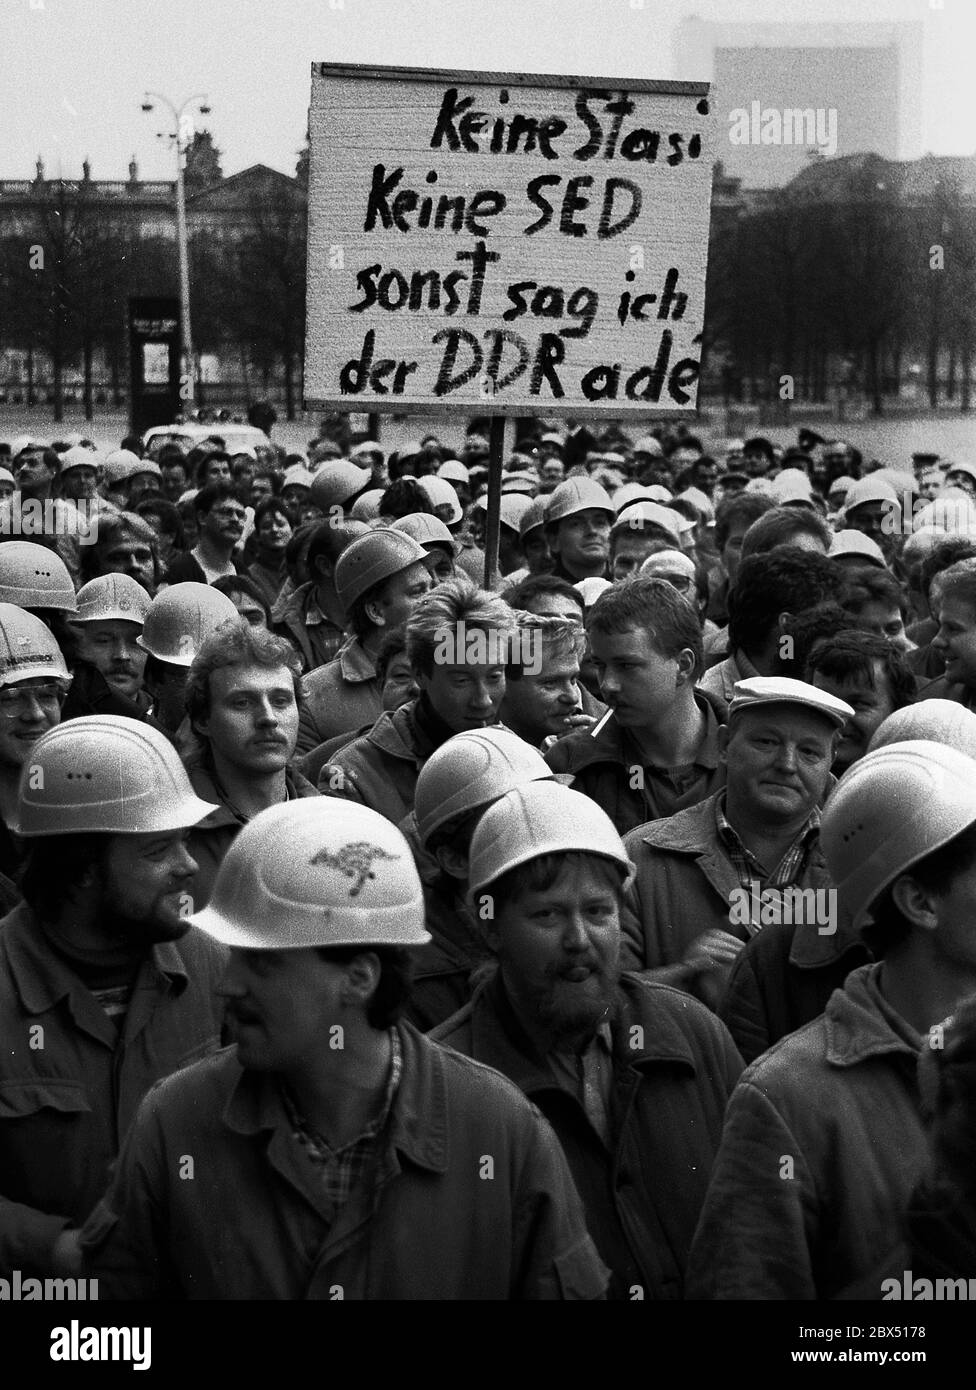 Berlino / GDR / Gennaio 1990 Demo a sostegno della Tavola rotonda, il governo Modrow non ha seguito gli ordini della Tavola rotonda. Di conseguenza, i lavoratori edili dei cantieri di Friedrichstrasse hanno smesso di lavorare e si sono trasferiti al Volkskammer. La maggior parte di loro ha lavorato per VEB Ingenieurhochbau, che ha forti gruppi di opposizione. // opposizione / Tavola rotonda / Wende / unificazione / GDR-Politica *** Città titolo *** Germania Est / Germania Comunista / Opzioneautorità statali Beside nel 1990 è stata installata una Tavola rotonda. Si sono formati tutti i gruppi di opposizione, i membri dello Stato e le persone indipendenti Foto Stock